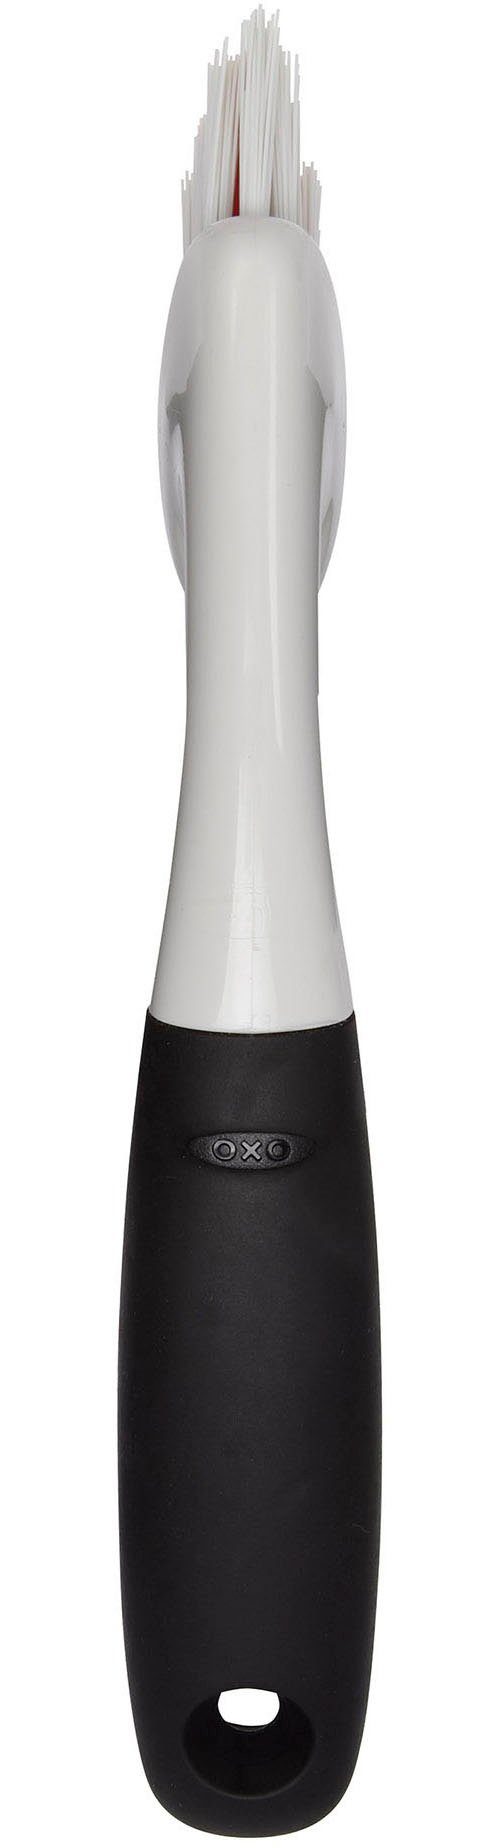 OXO Good Fugenbürste Reinigungsbürste, Grips ergonomischem Griff mit